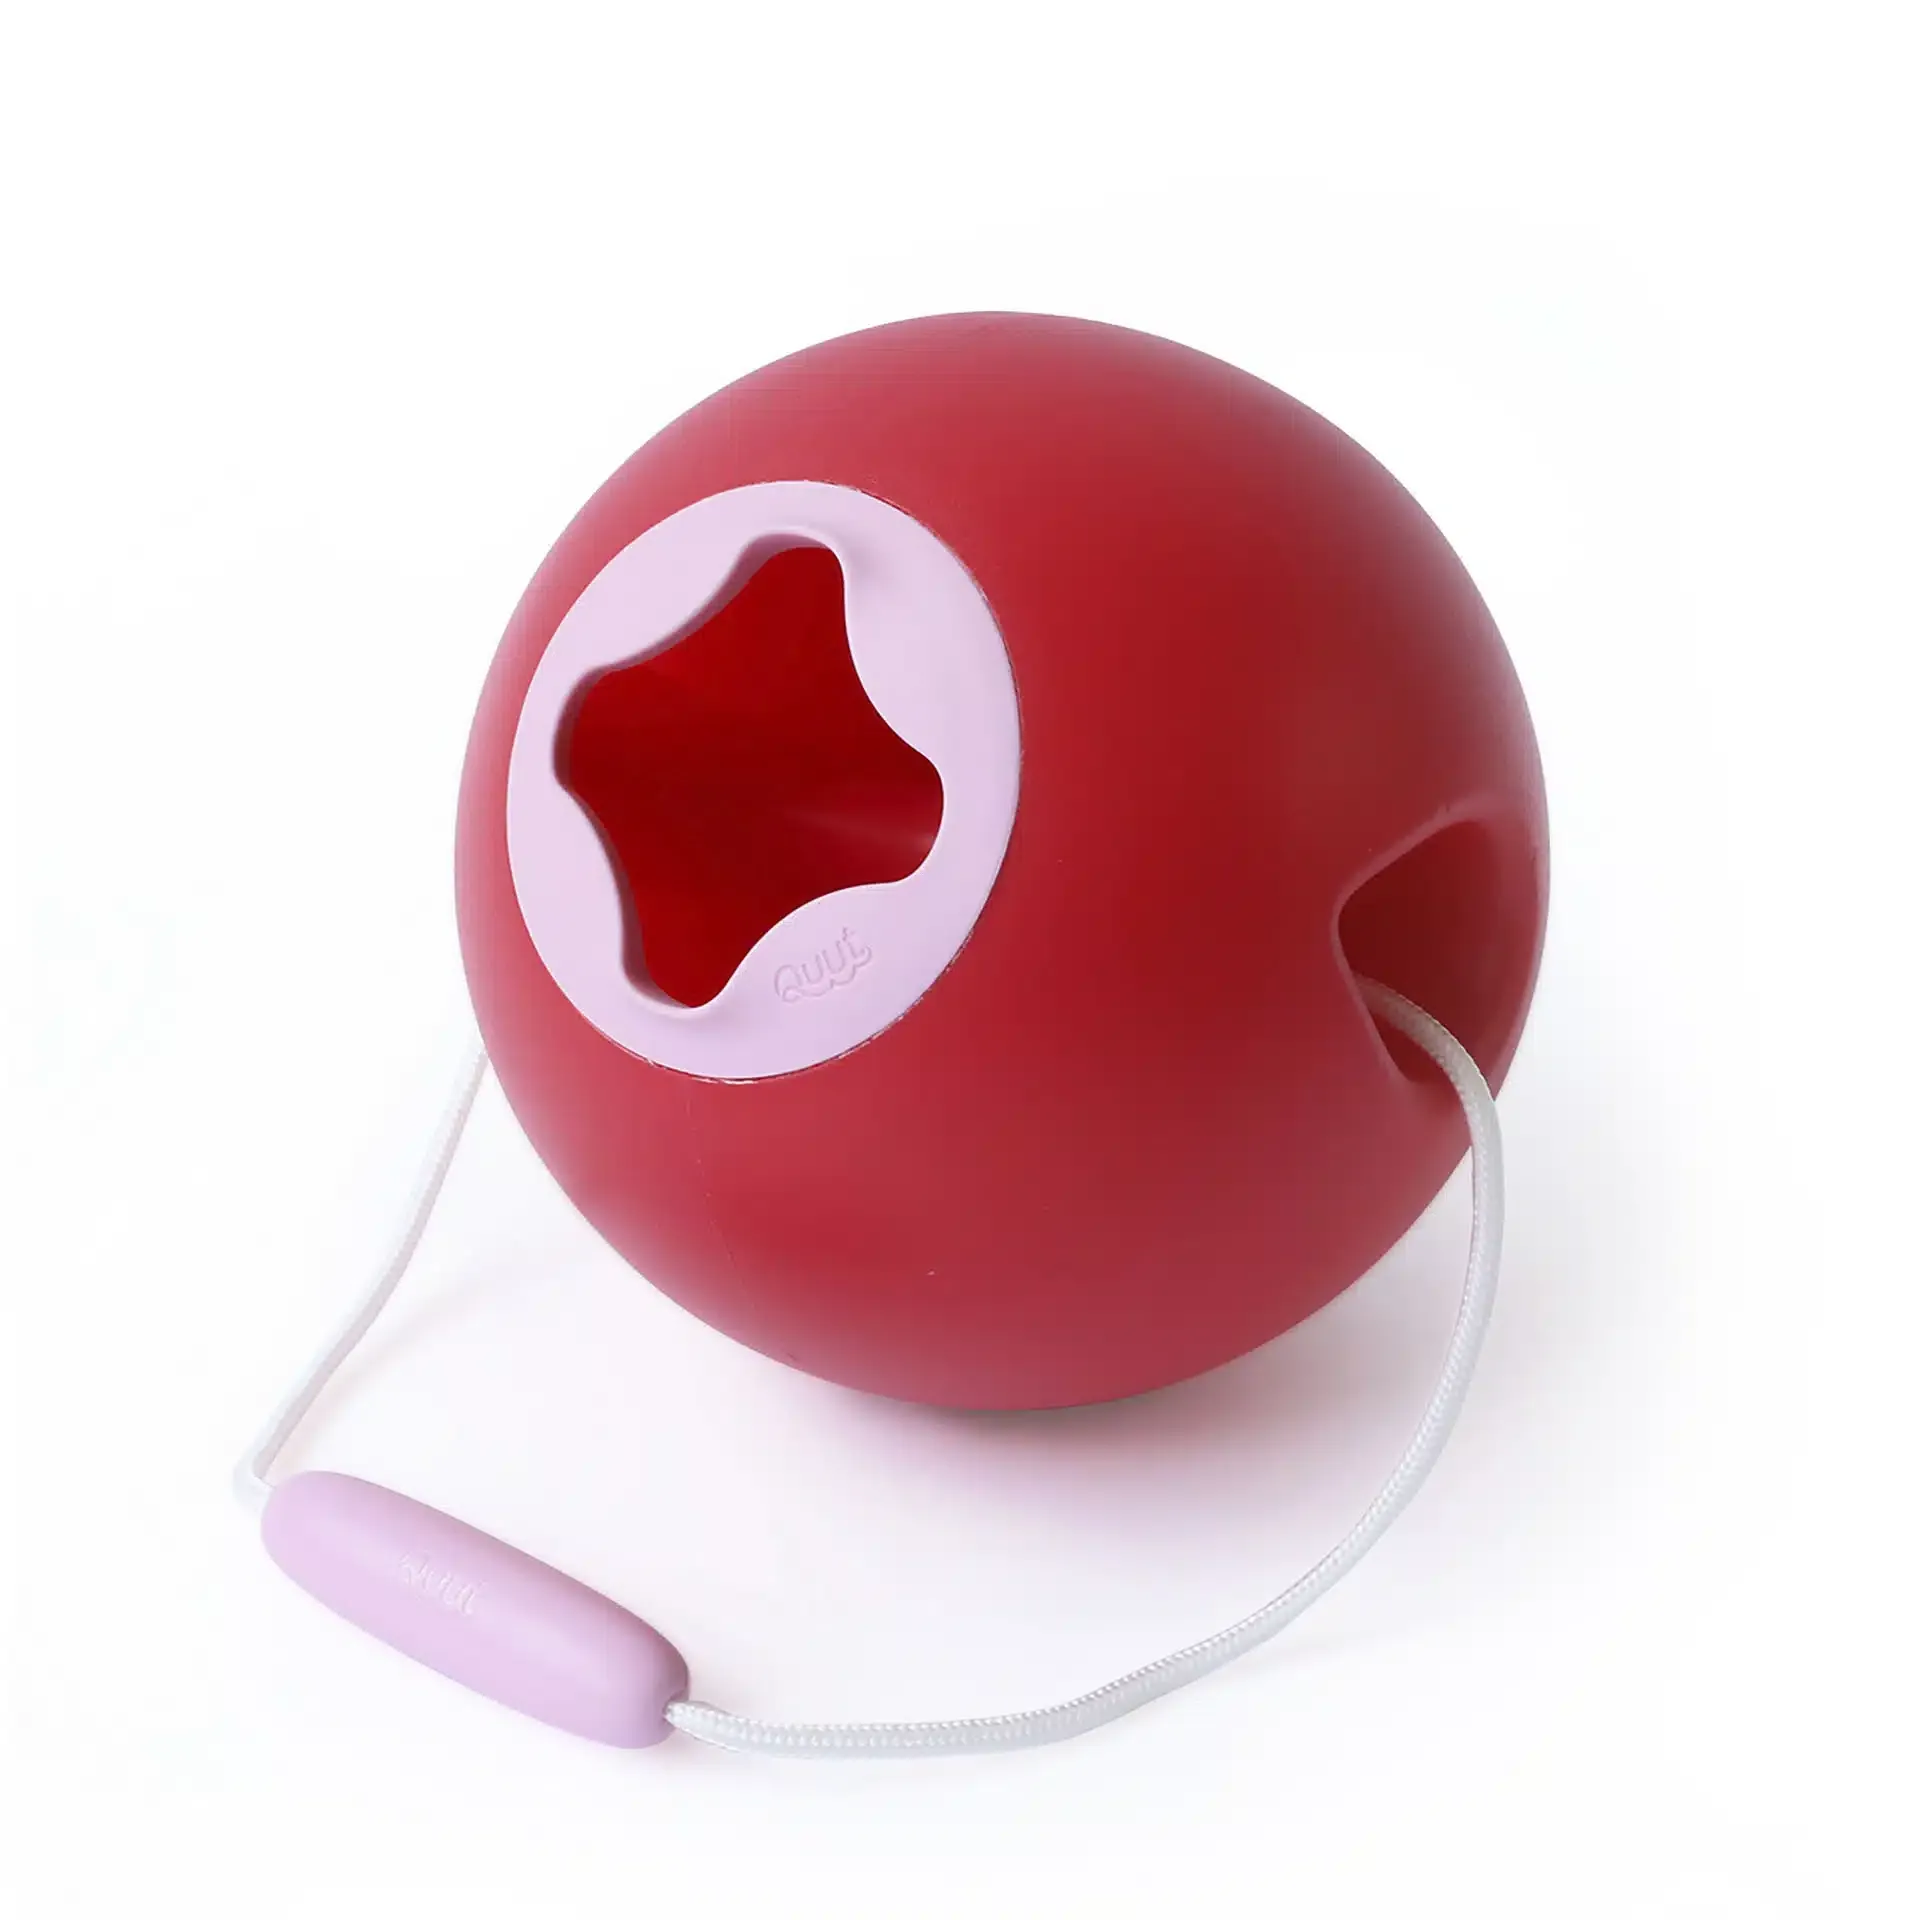 QUUT Vedro velke Ballo Cherry 1×1 ks, vedro